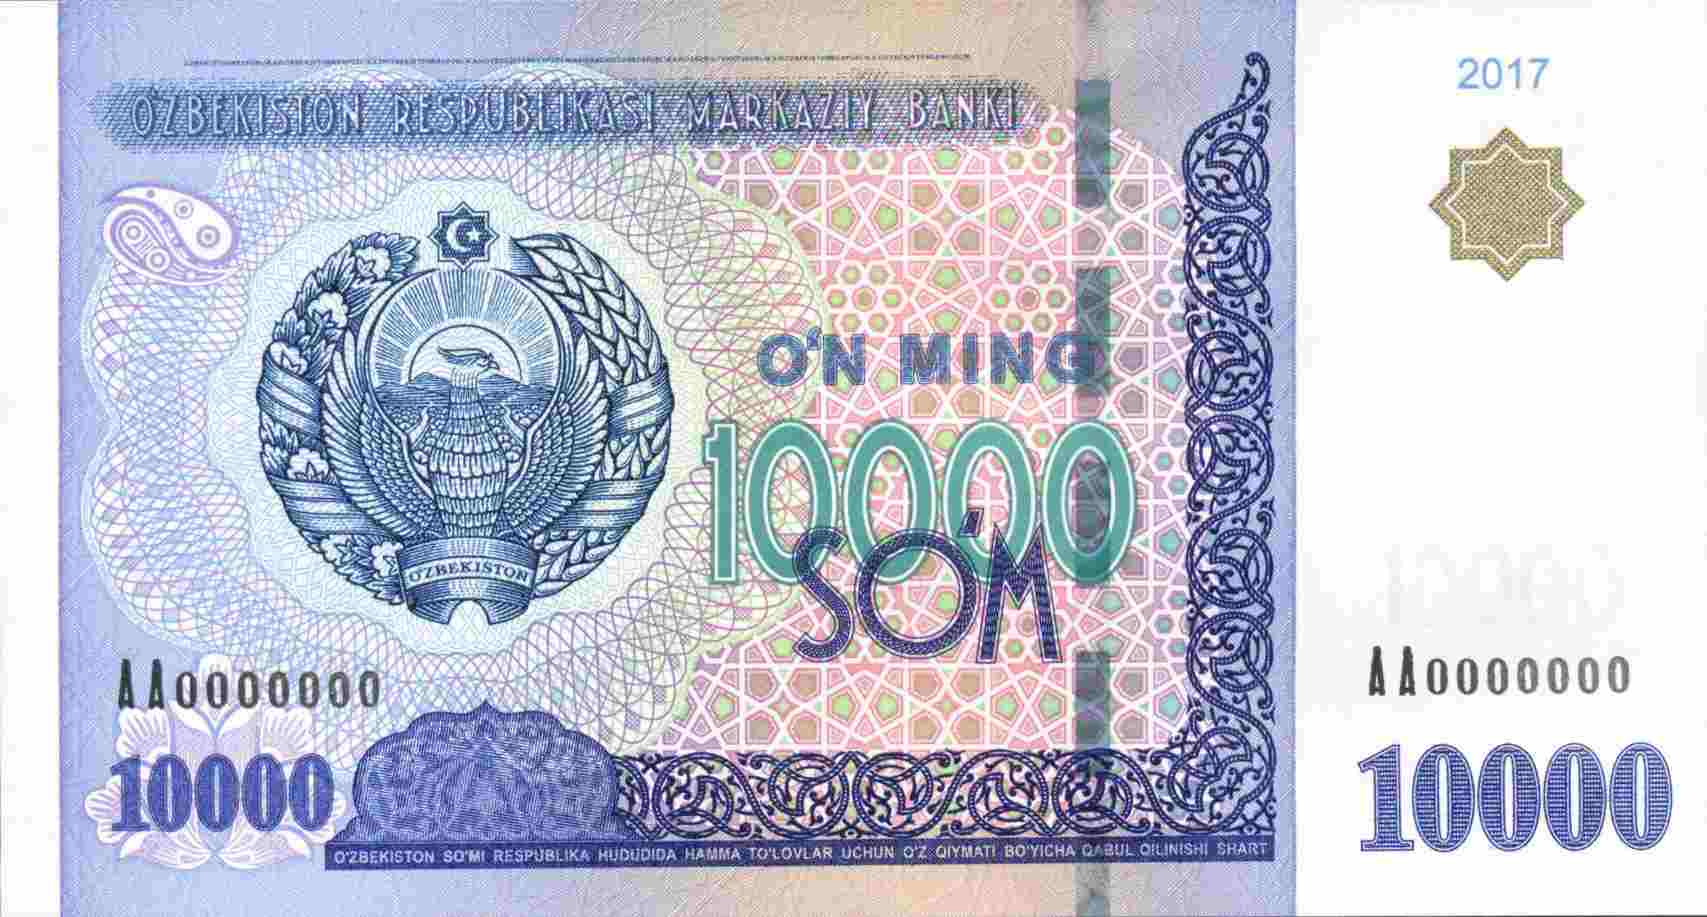 Uzbekistan wydaje nowy banknot obiegowy o nominale 10000 sumów